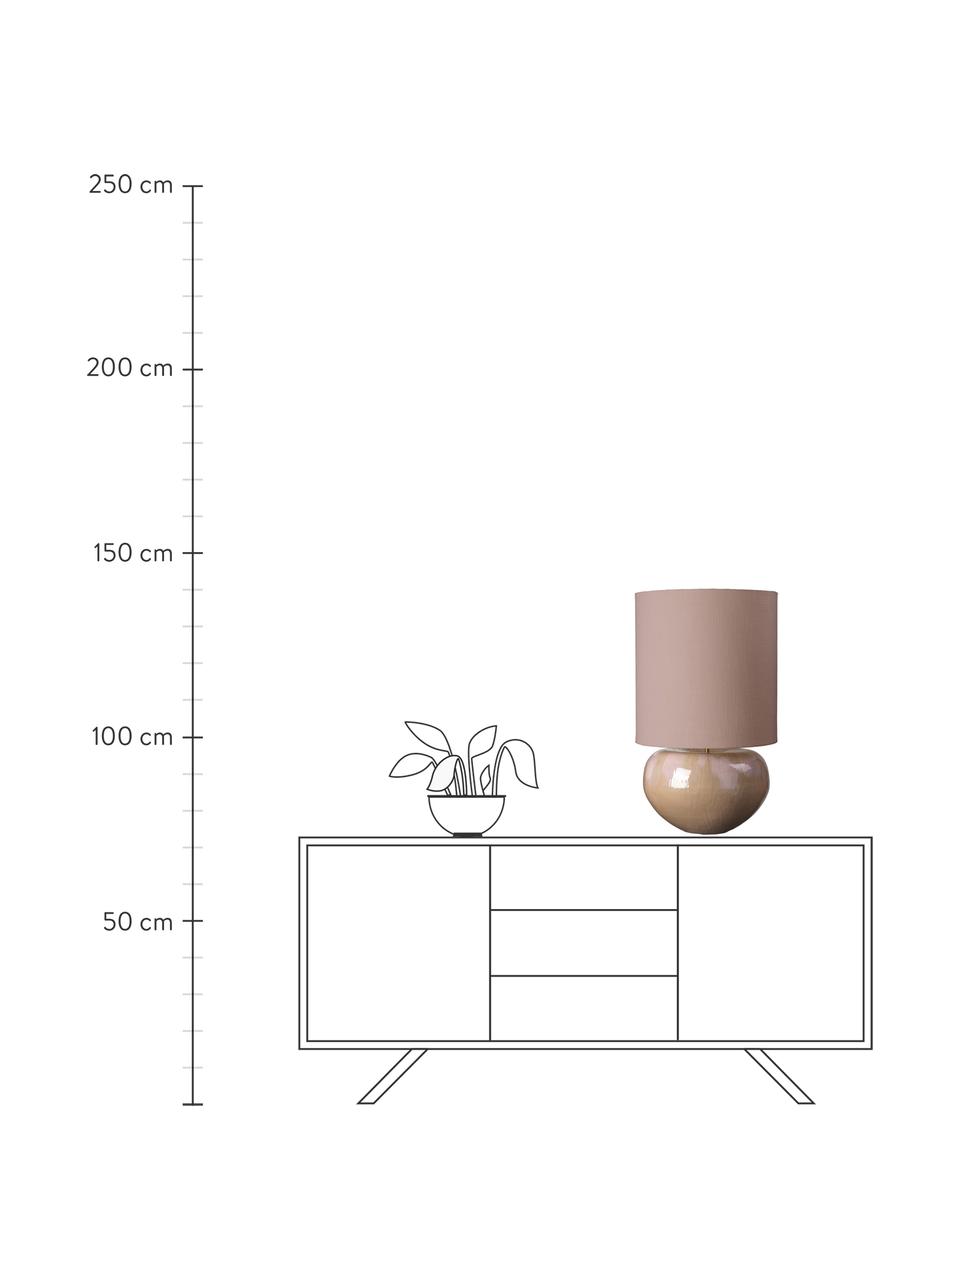 Lámpara de mesa grande Ena, Pantalla: tela, Cable: plástico, Beige, Ø 40 x Al 68 cm